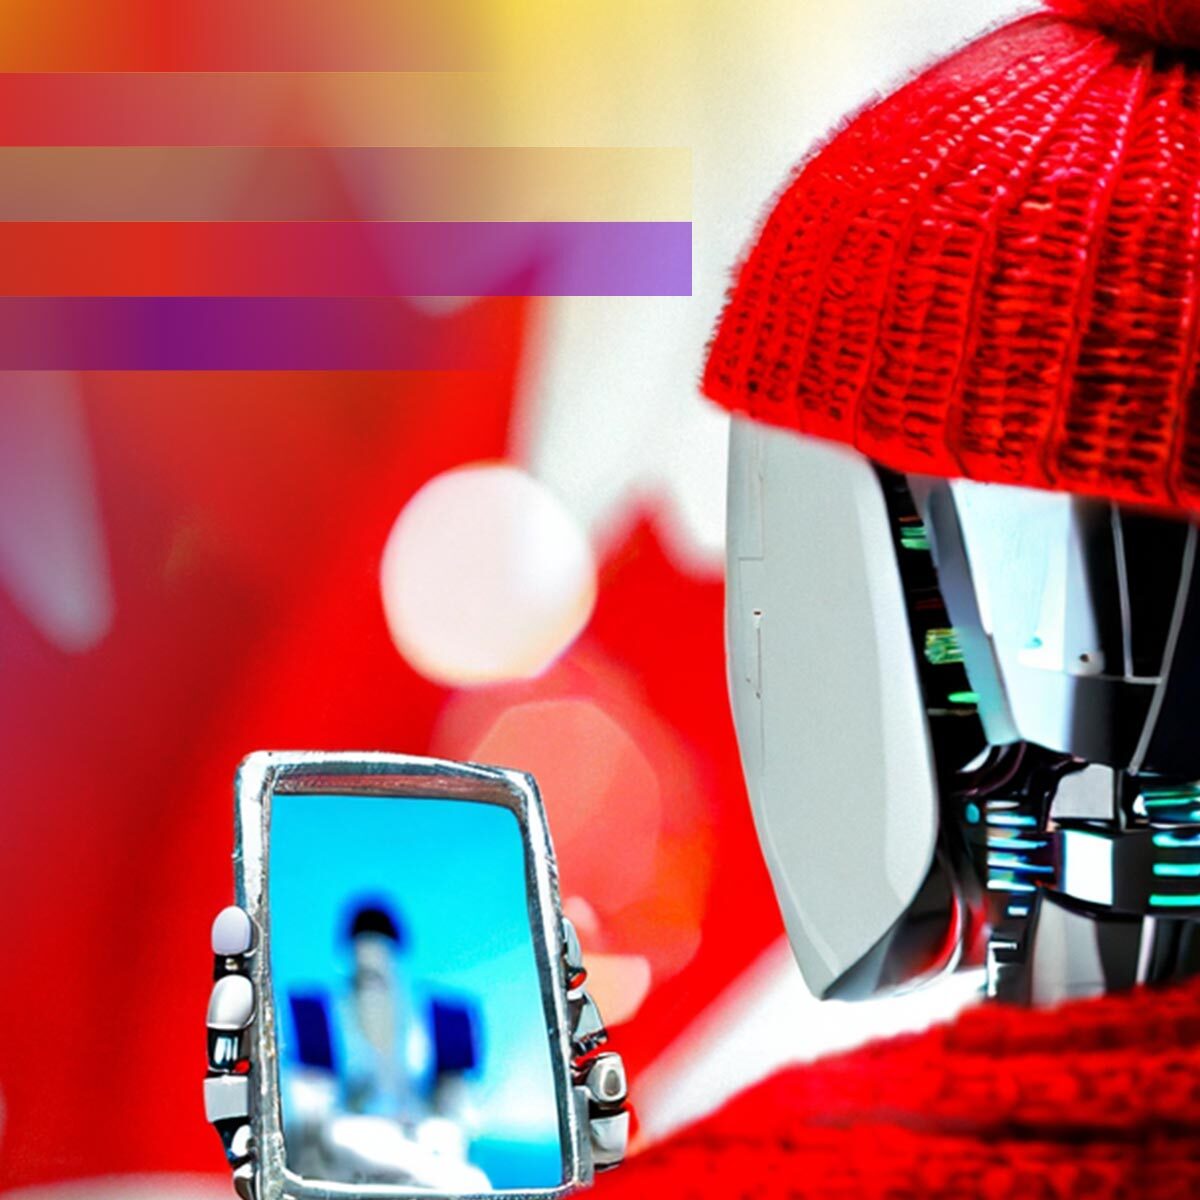 A robot wearing a red knitted hat and scarf stares into a mirror with a Canadian flag in the background; Un robot portant un bonnet tricoté rouge et une écharpe se regarde dans un miroir avec un drapeau canadien en arrière-plan.